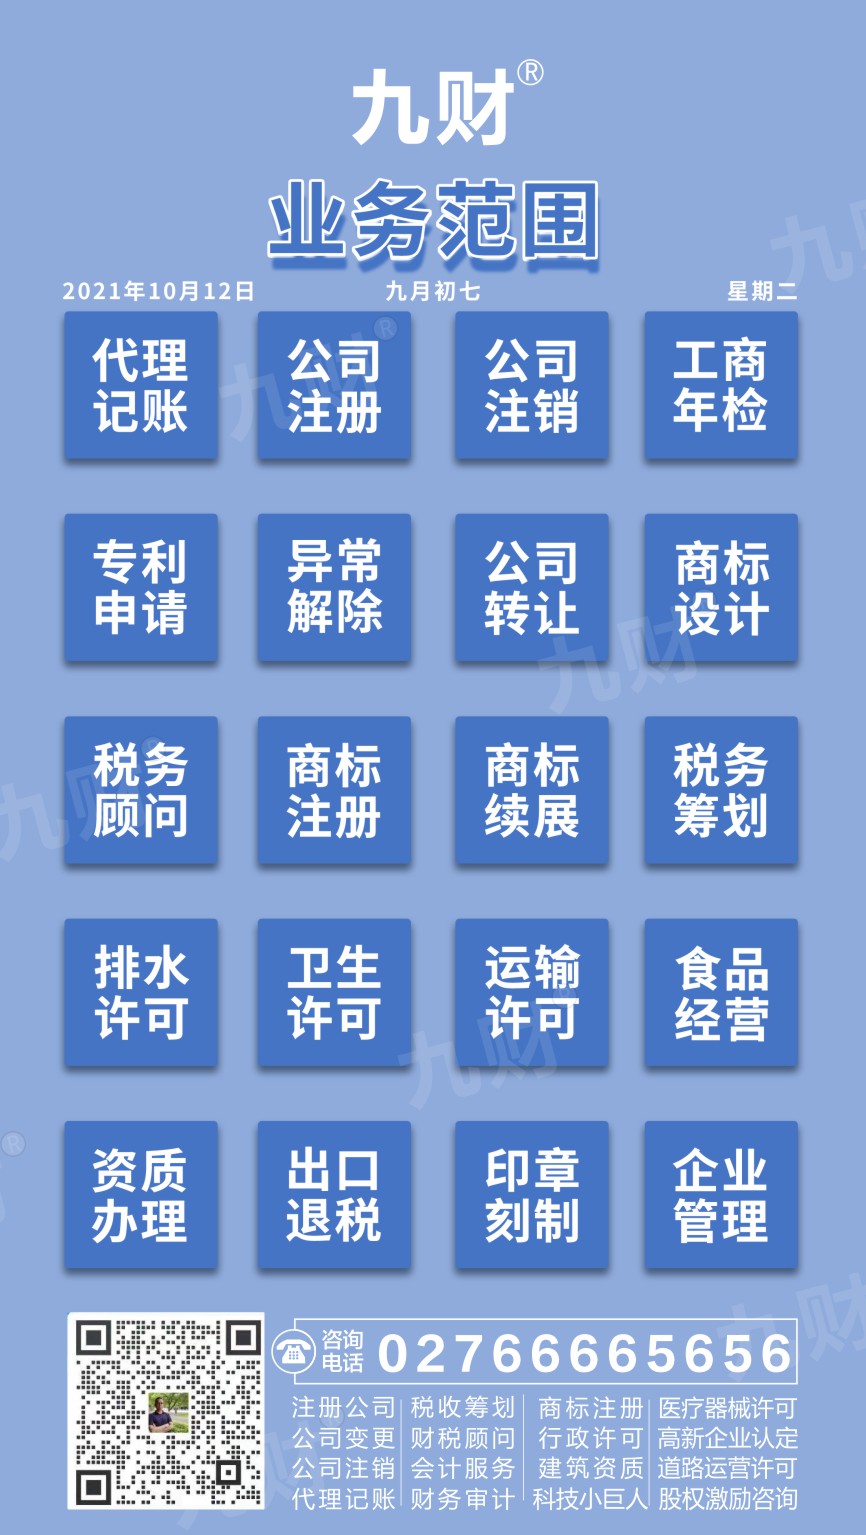 汉阳区武汉企业单位名称注册地在外地怎么理解